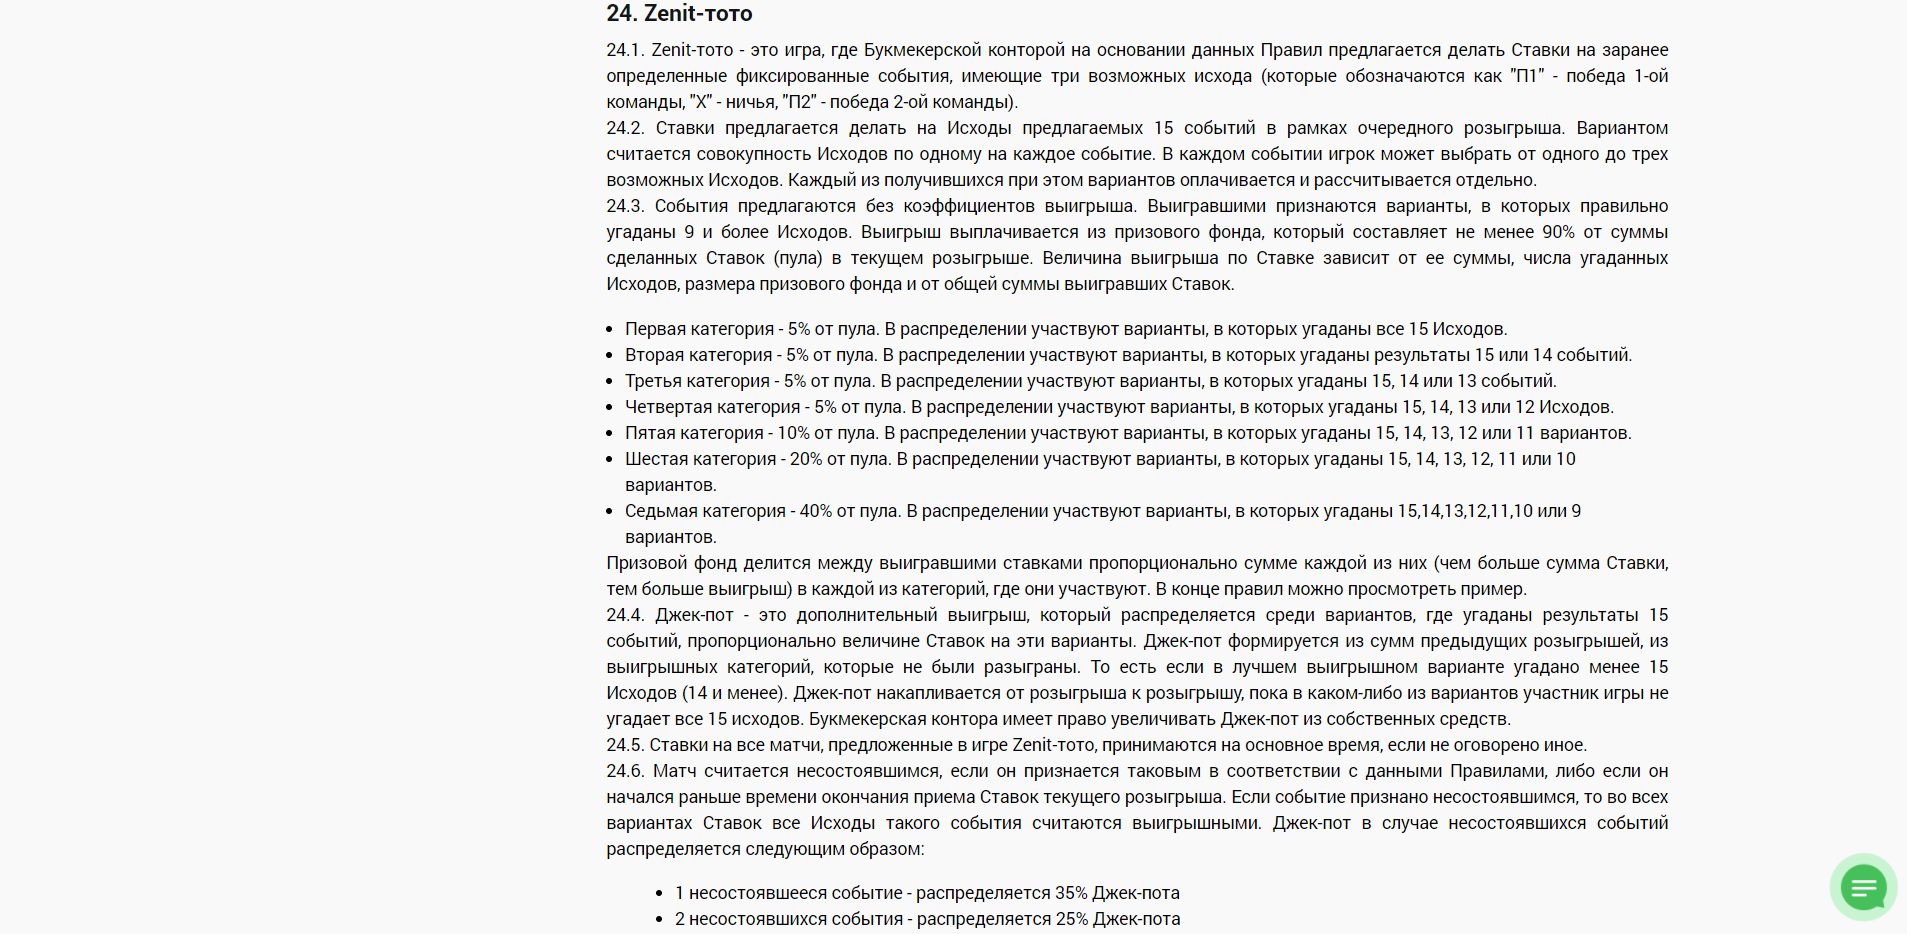 Правила Zenit-тото (п. 24)